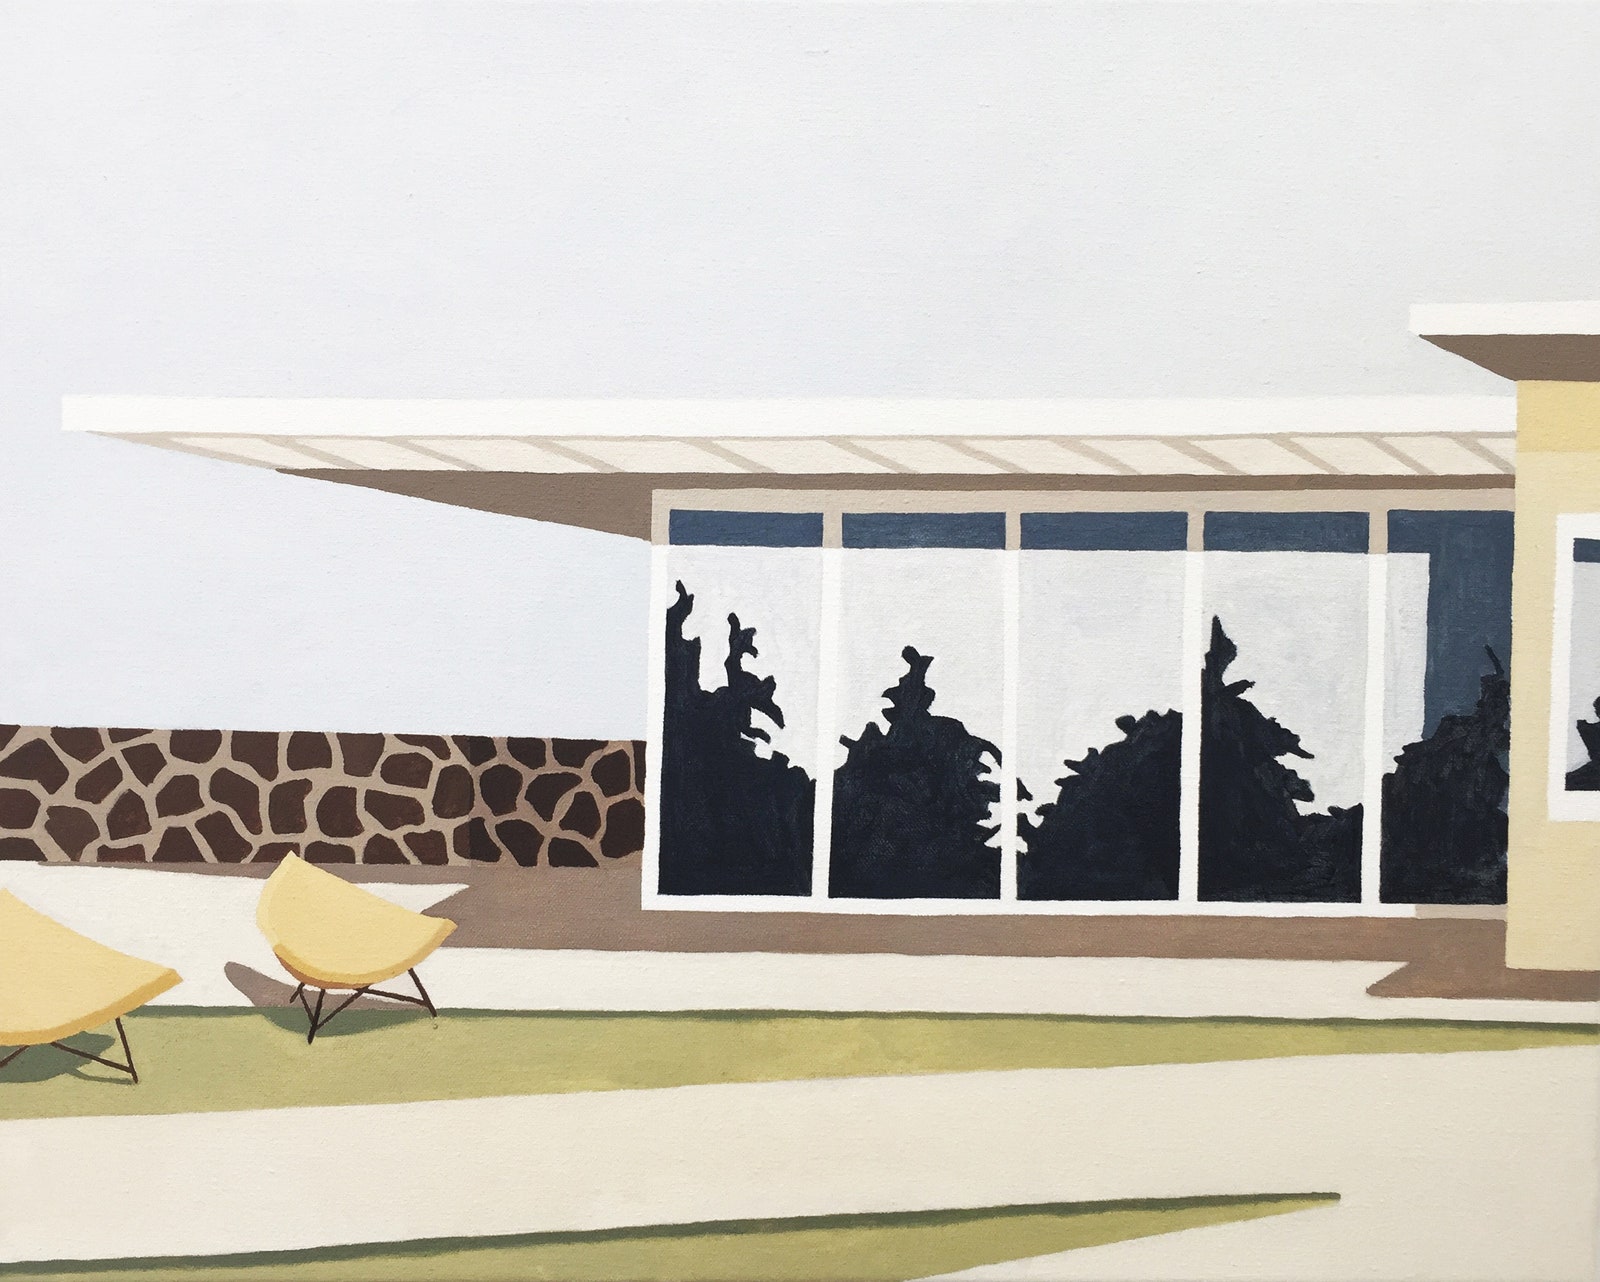 Модернистская архитектура США и Австралии на полотнах Элизы Госсе